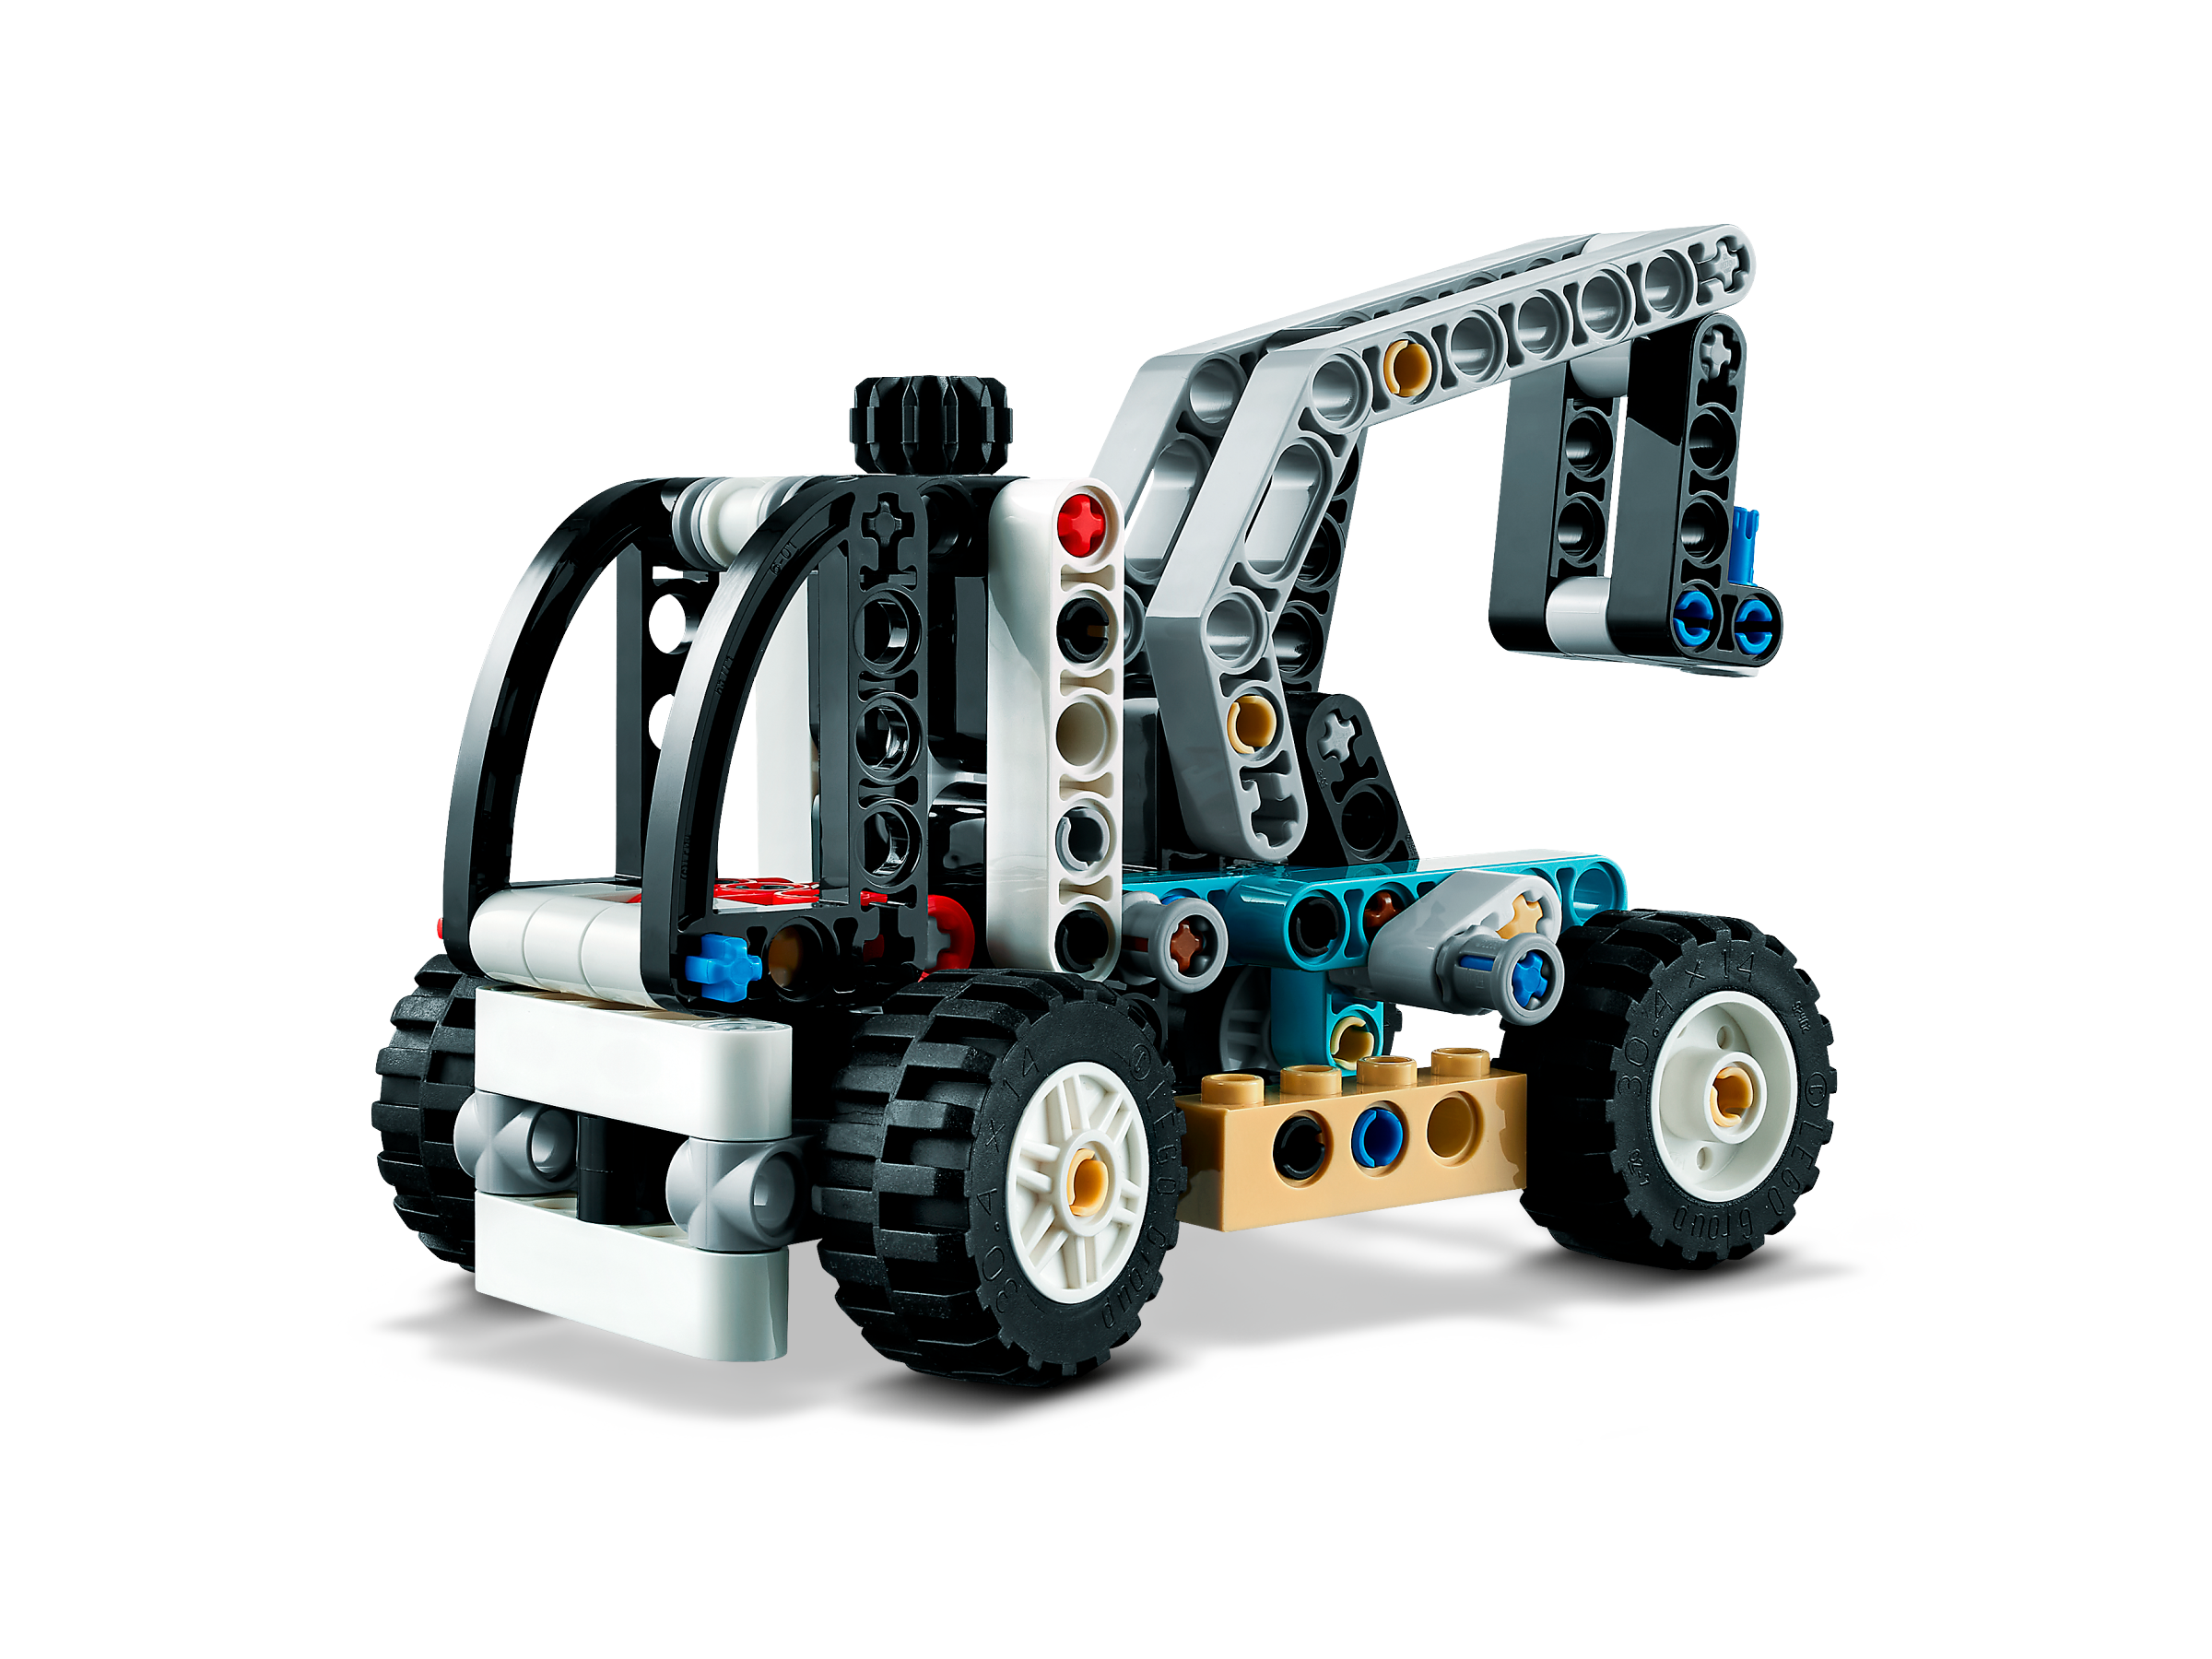 Le chariot élévateur LEGO Technic 42133 - La Grande Récré